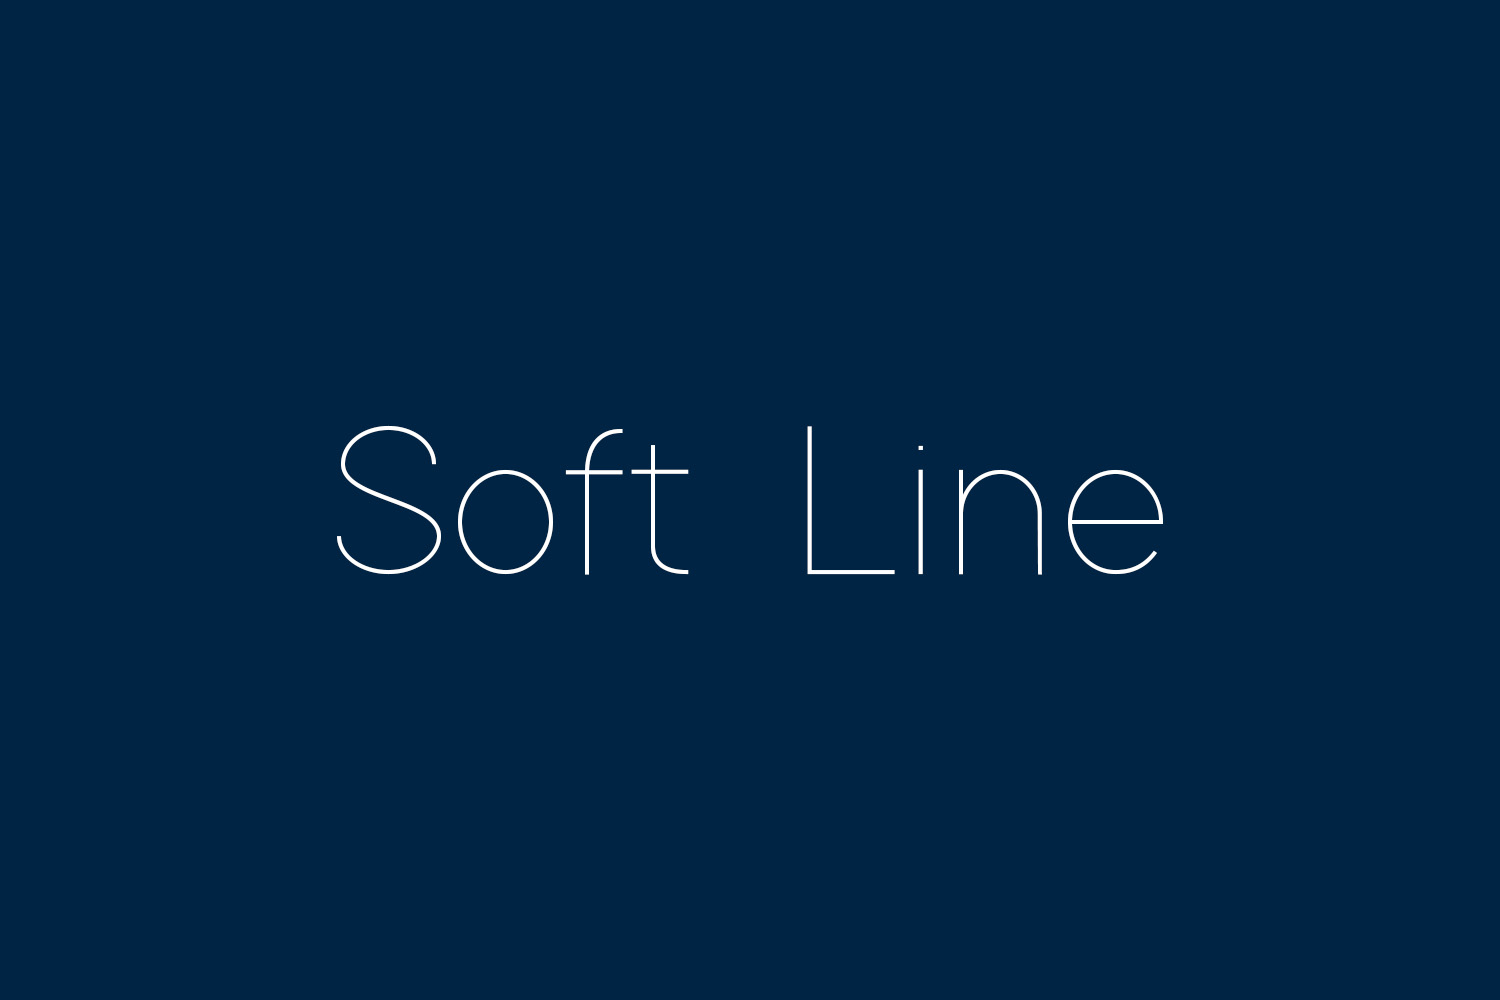 Soft Line Free Font